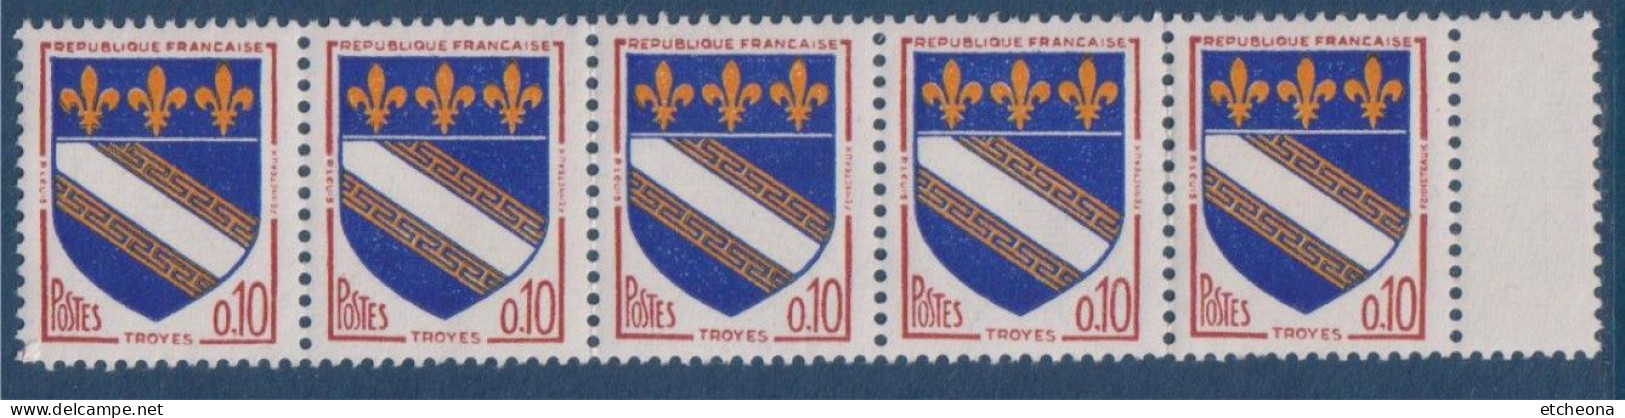 Troyes Armoiries De Villes IV N°1353 Bande De 5 Timbres Neufs Avec Pont De Feuille à Droite - 1941-66 Wappen